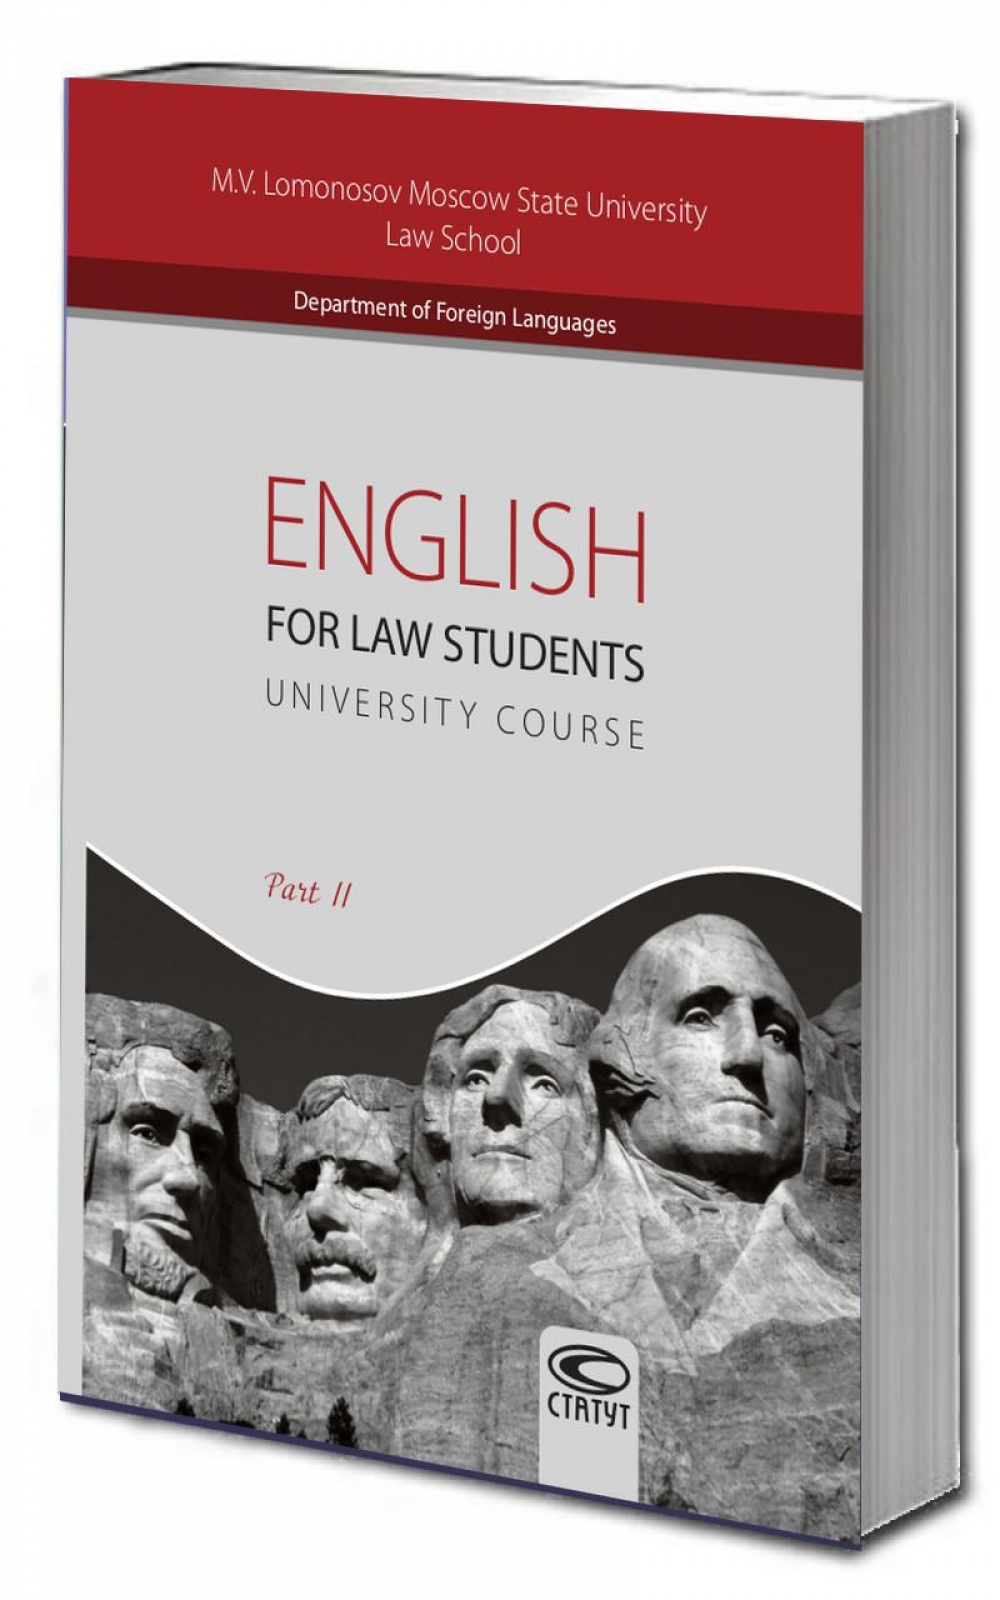 Английский язык для студентов-юристов. Часть II. English for Law Students:University Course/ Part II 